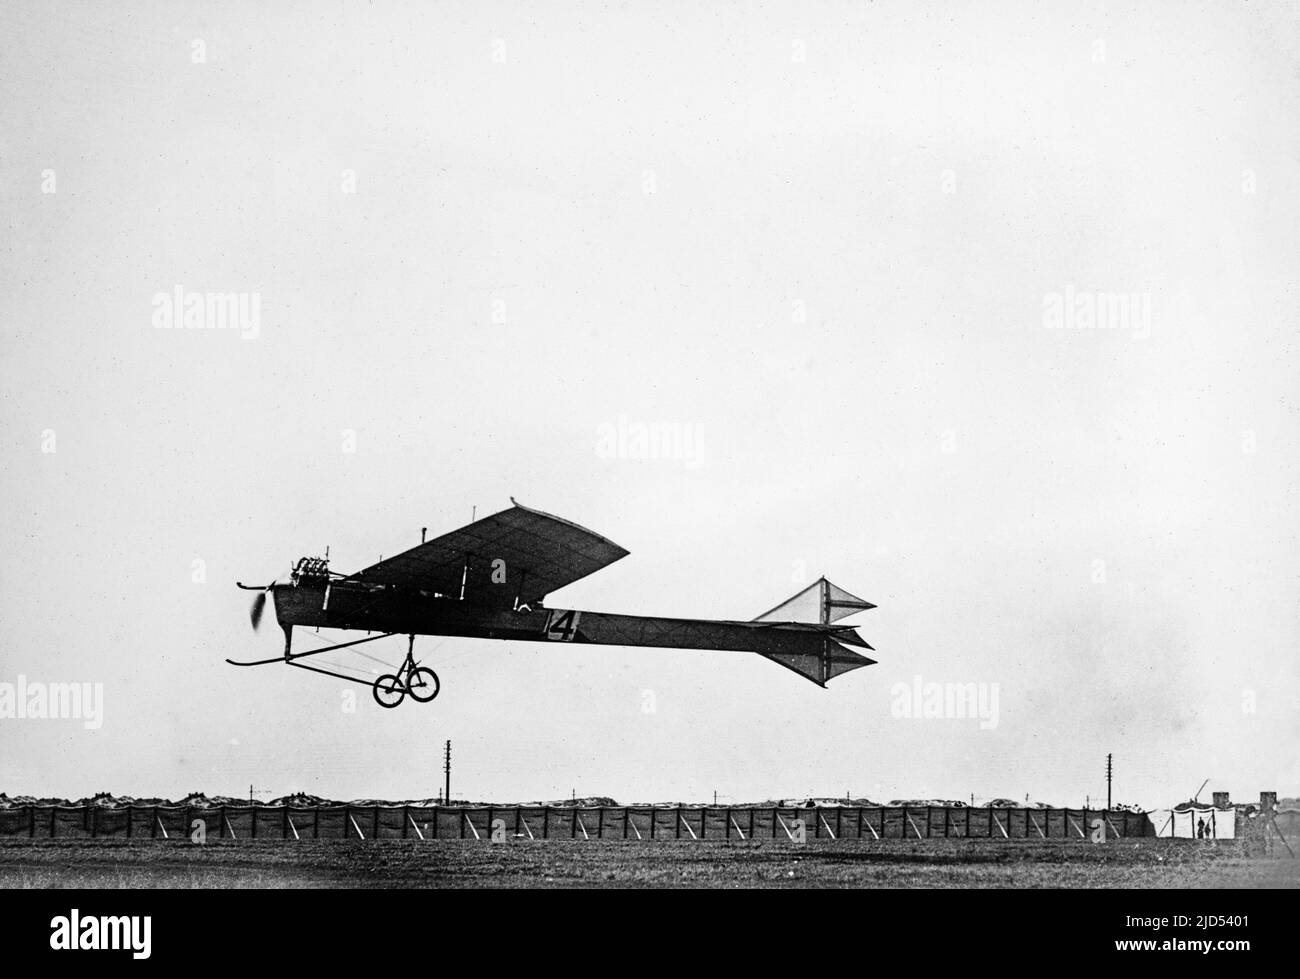 Le pionnier de l'aviateur français Hubert Latham volant de son Monoplane Antoinette 4. Photo en noir et blanc du début du 20th siècle prise à Blackpool, en Angleterre, pendant un conte. Pris en 1909. Banque D'Images